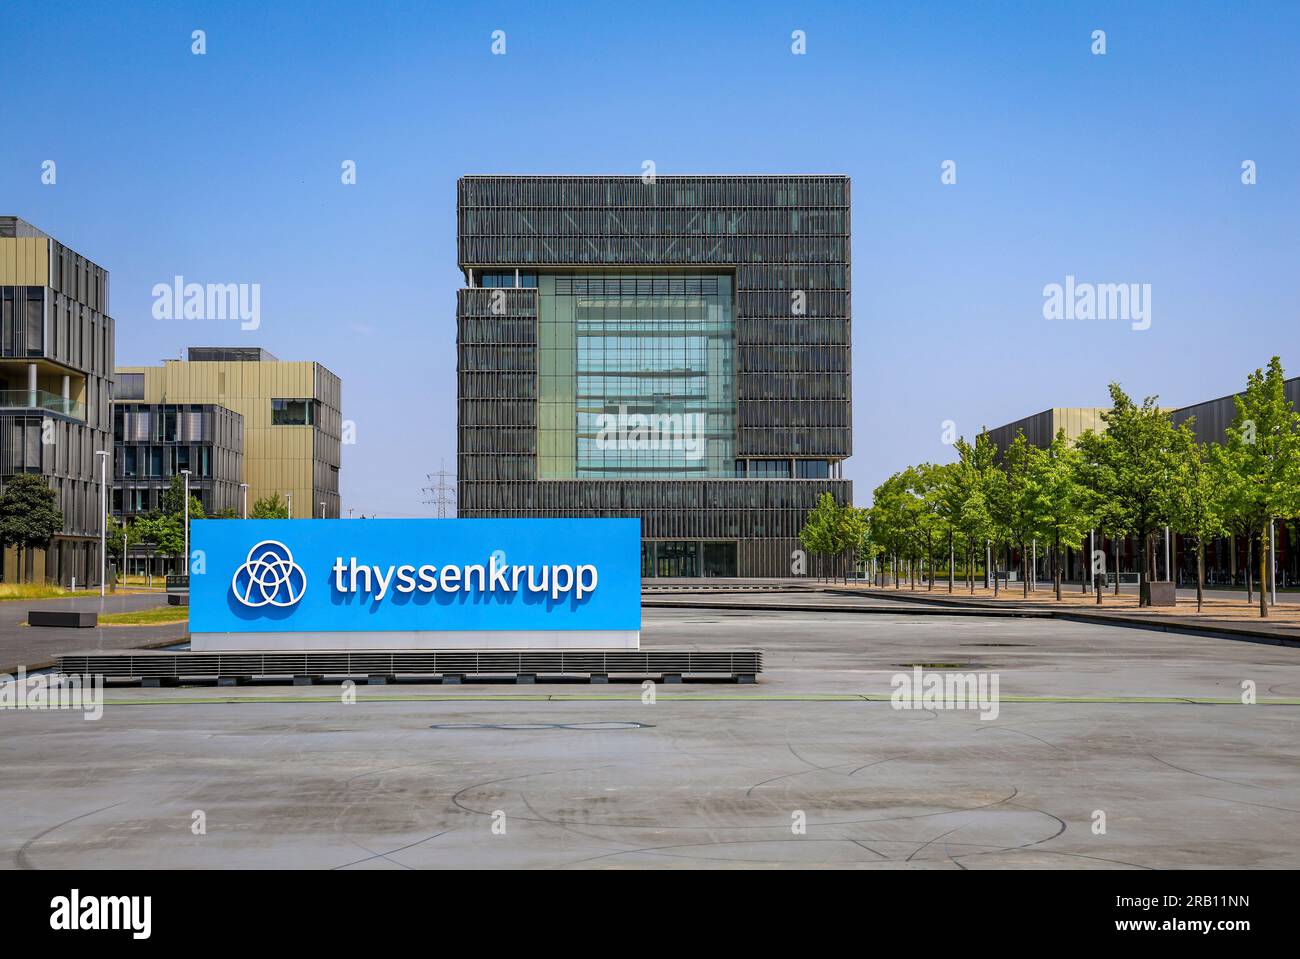 Essen, Nordrhein-Westfalen, Deutschland - ThyssenKrupp, Firmenlogo vor dem Hauptsitz. Thyssenkrupp AG ist ein Industriekonzern mit Schwerpunkt auf der Stahlverarbeitung und Deutschlands größtem Stahlproduzenten Stockfoto